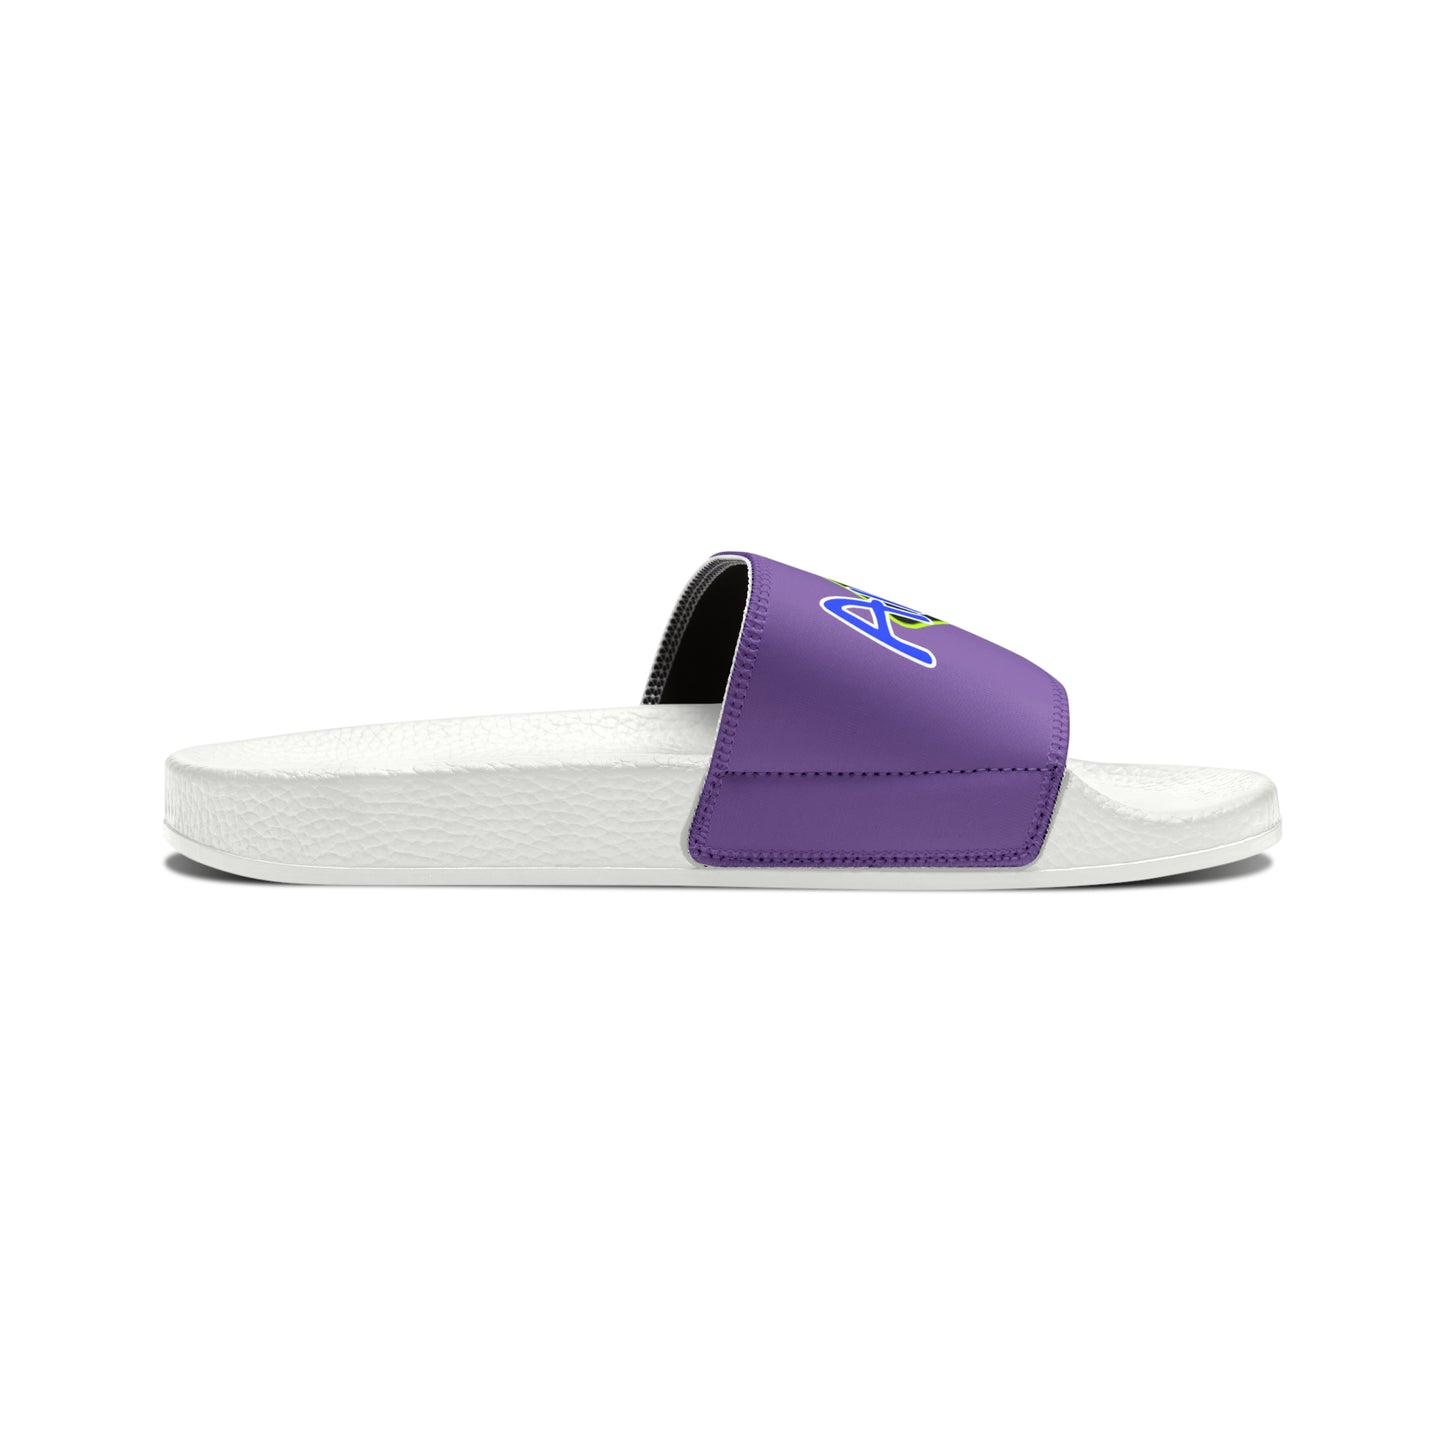 Men's Neon & Blue ALdre Slide Sandals (Lavender)